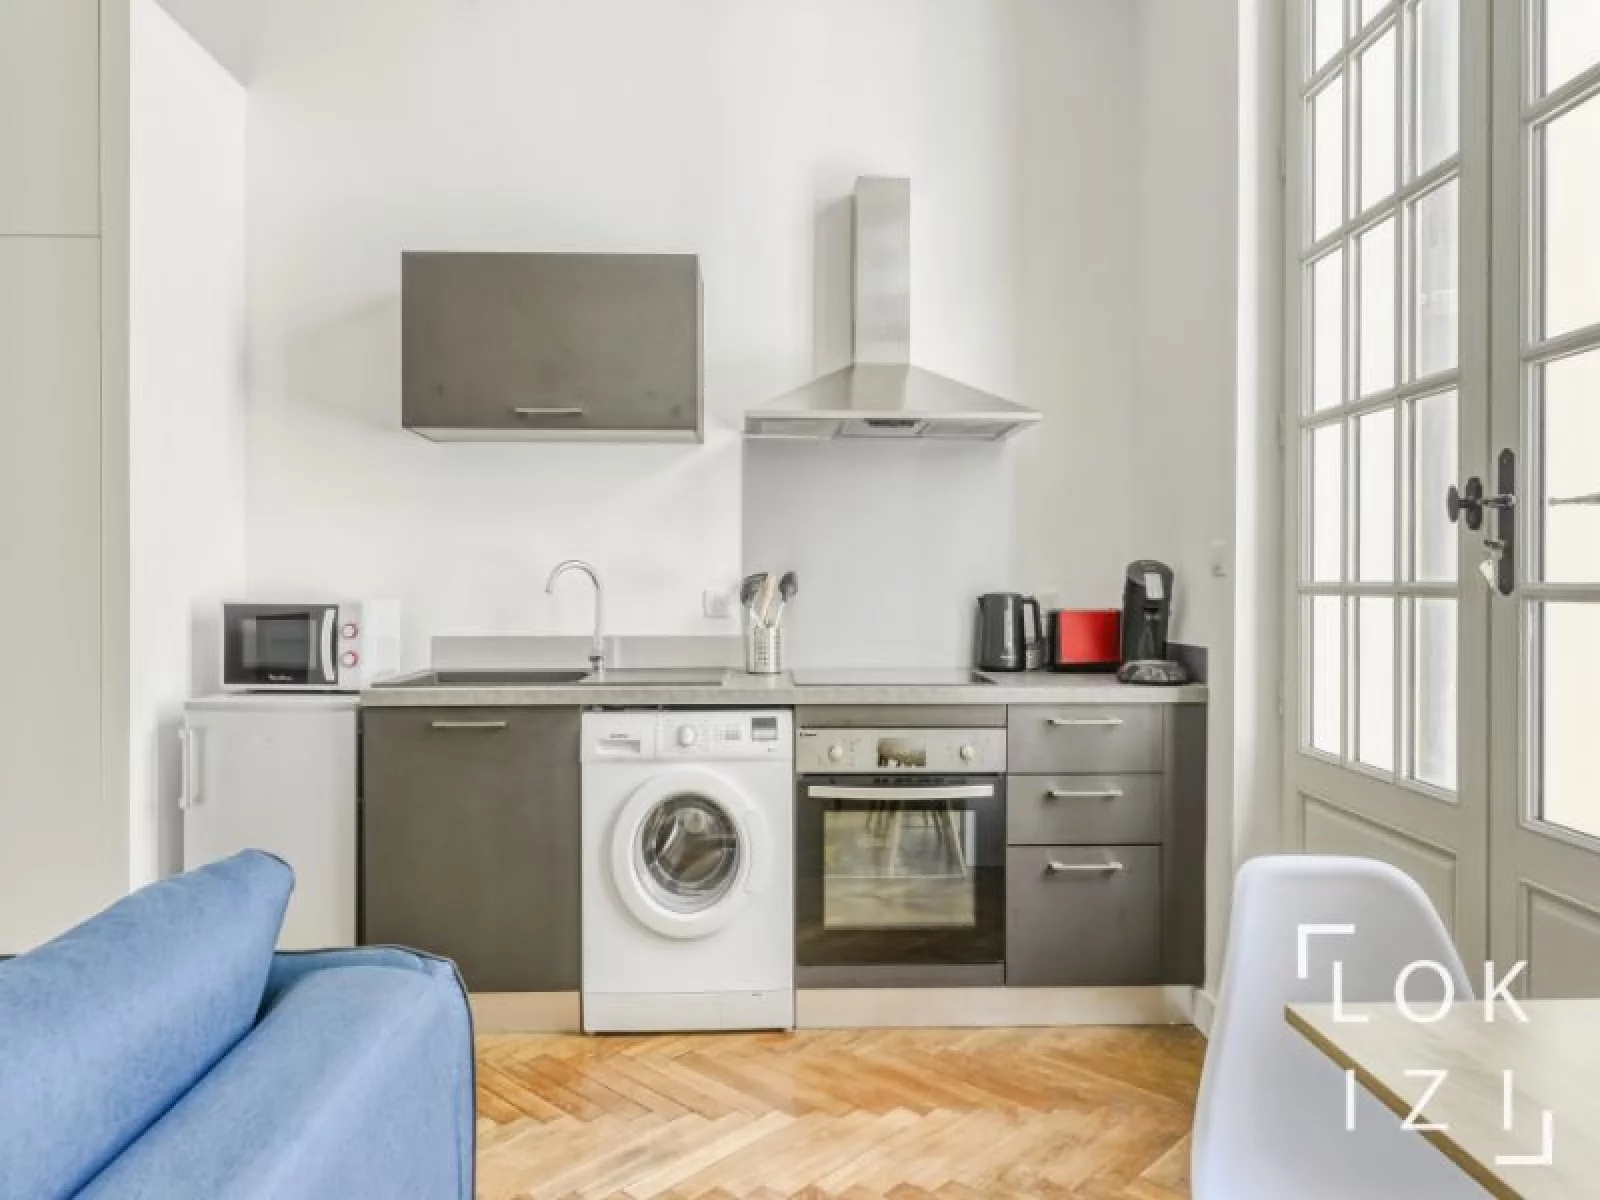 Location appartement meublé 2 pièces 33m² (Bordeaux - Chartrons)